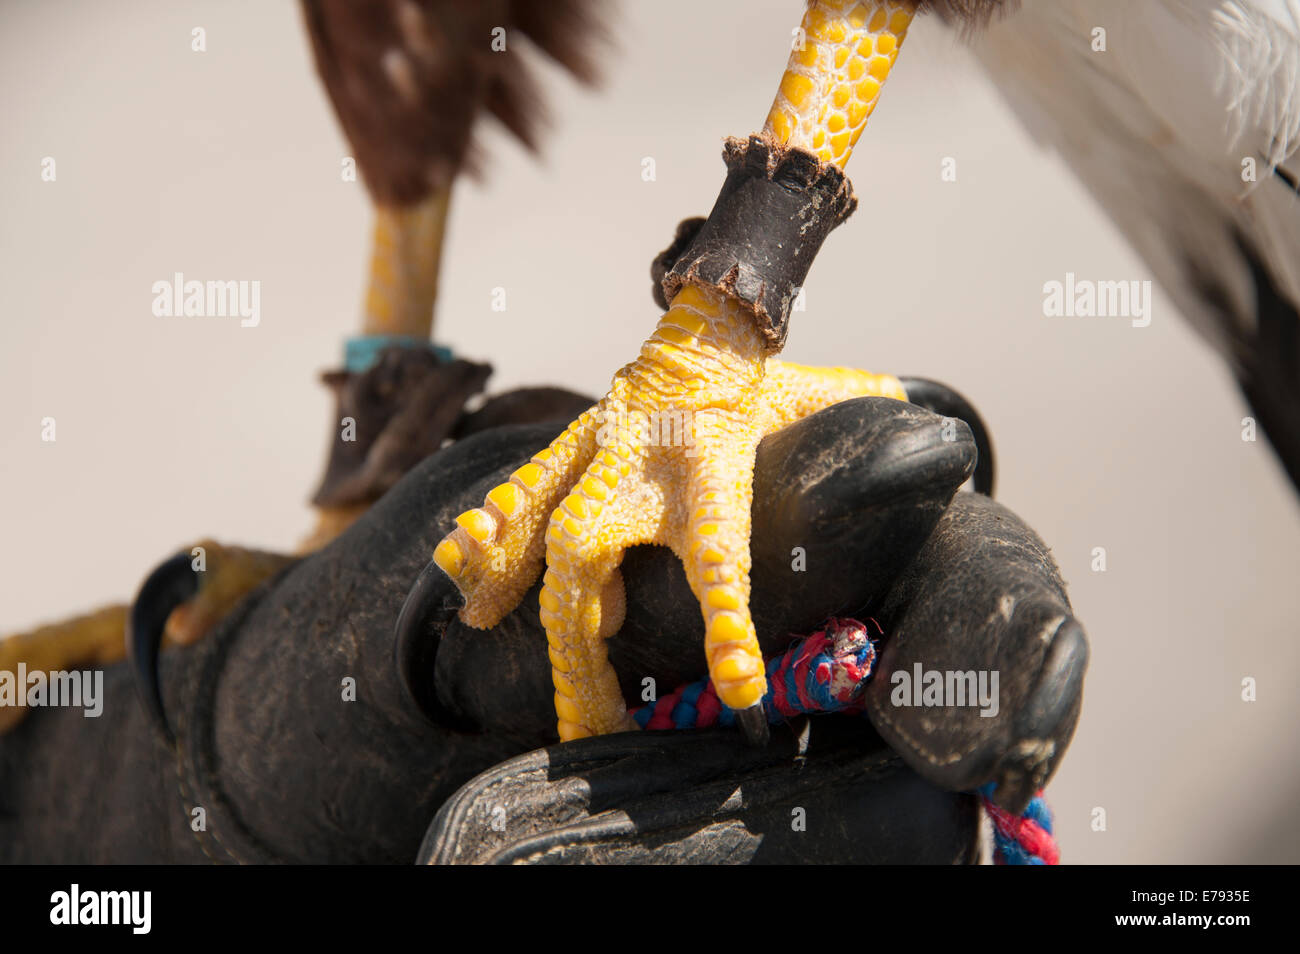 Gli uccelli rapaci piedi artigli artigli guanto in pelle Sharp Foto Stock